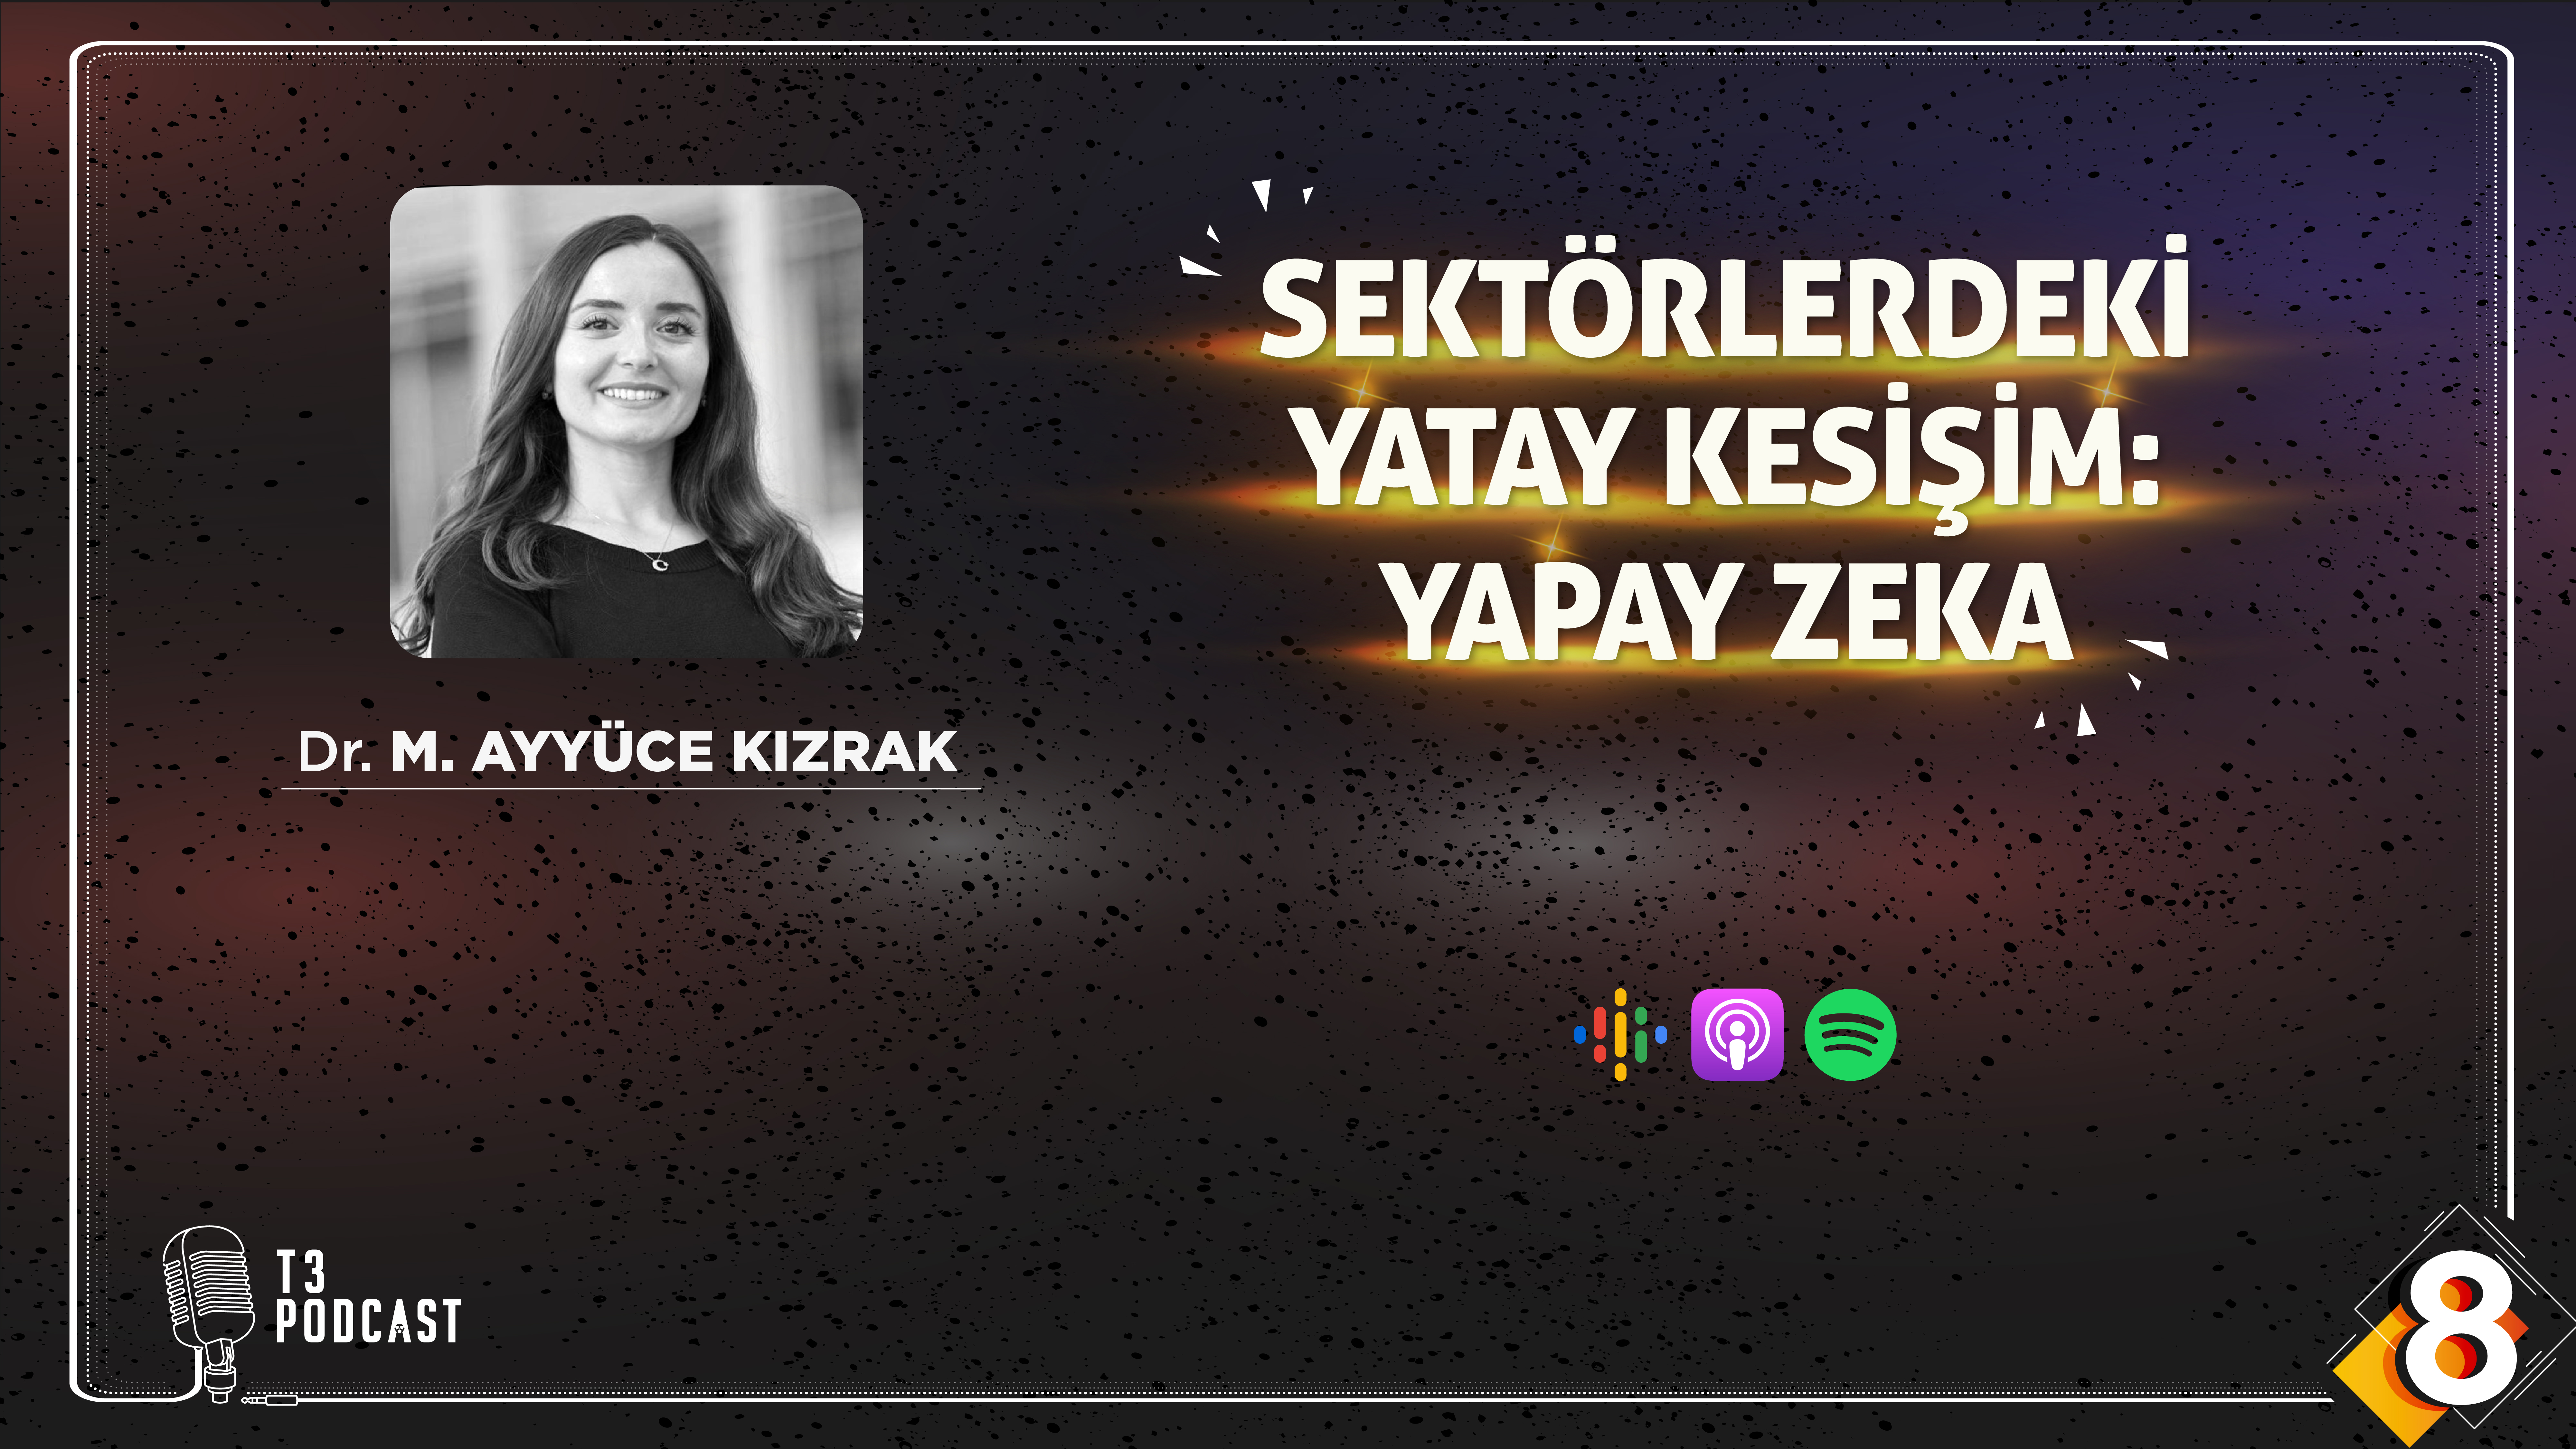 Sektörlerdeki Yatay Kesişim: Yapay Zeka - Dr. M. Ayyüce Kızrak 